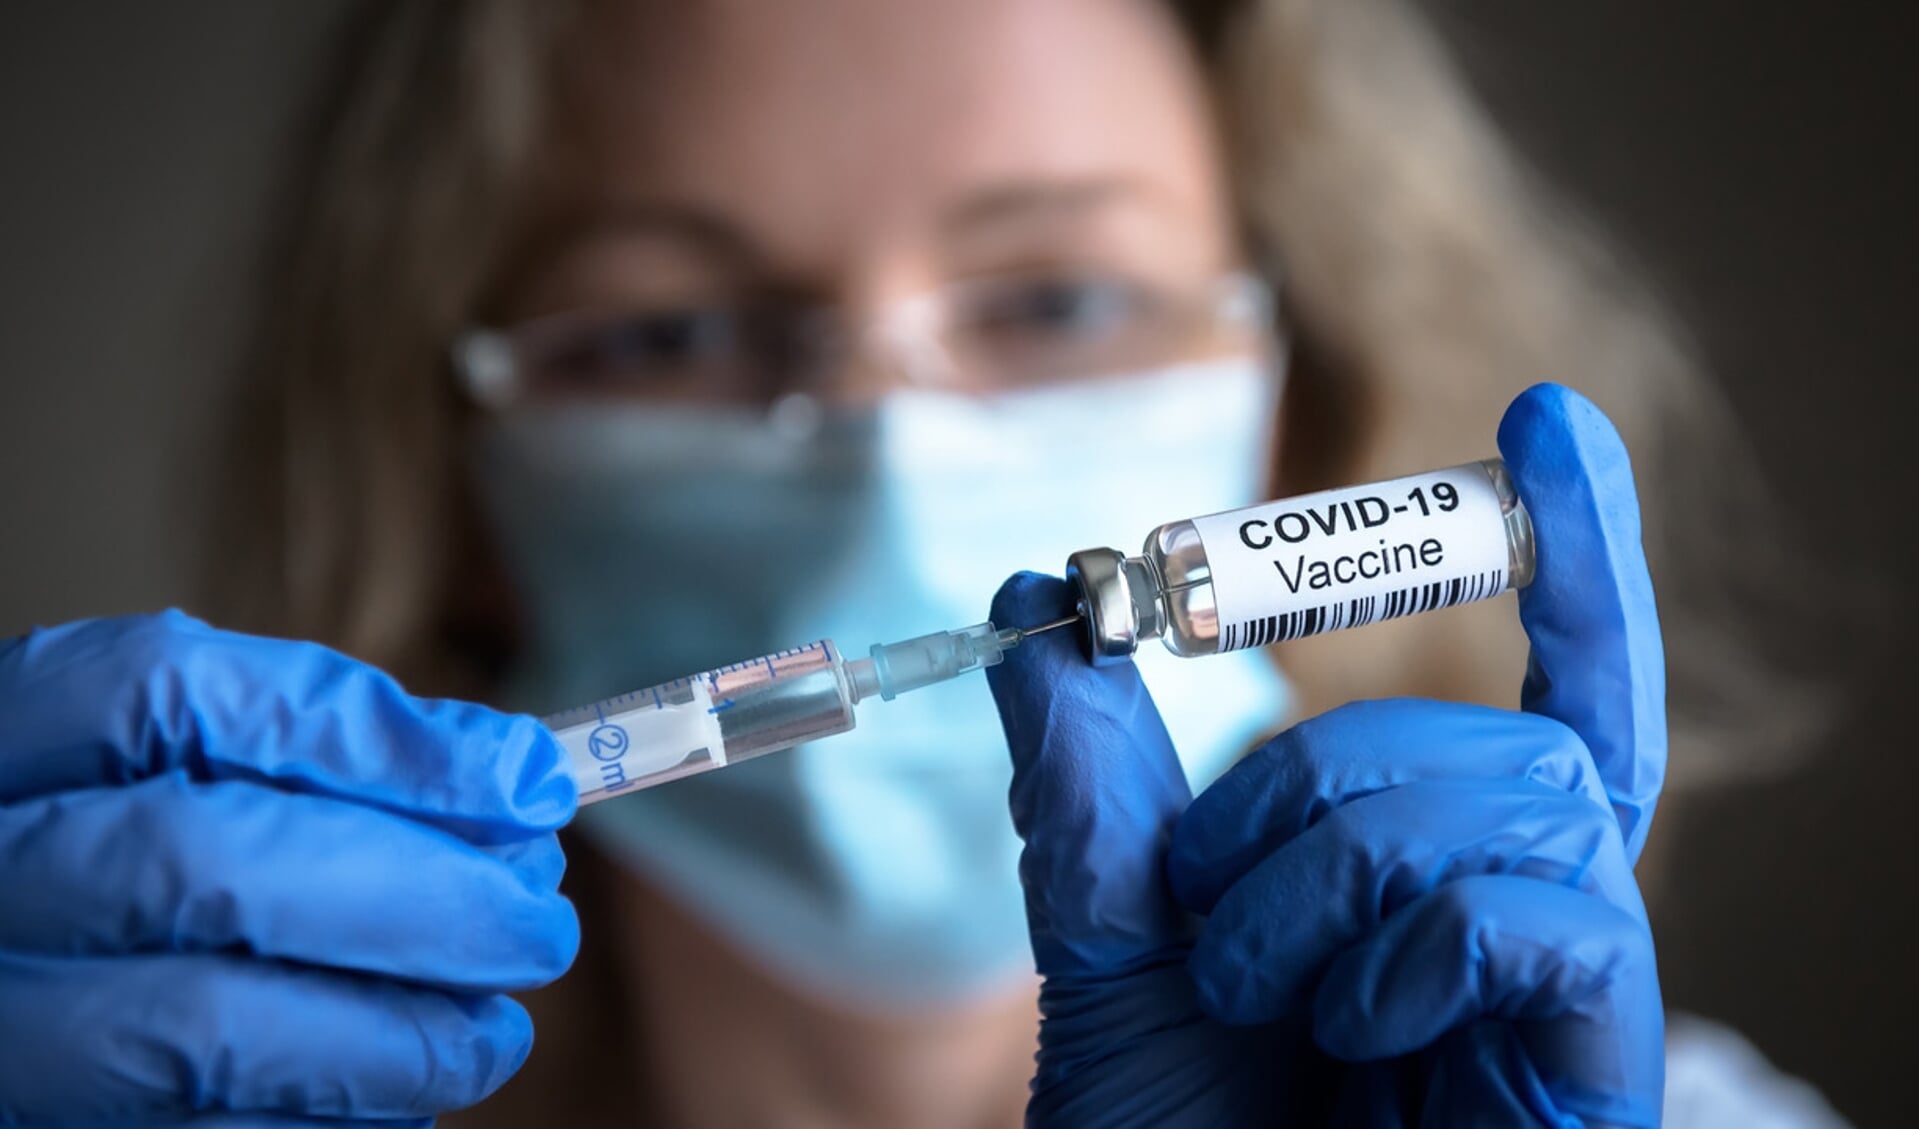 Op 26 april wordt in Koudum de vaccinatielocatie geopend waar mensen tegen het coronavirus worden ingeënt.